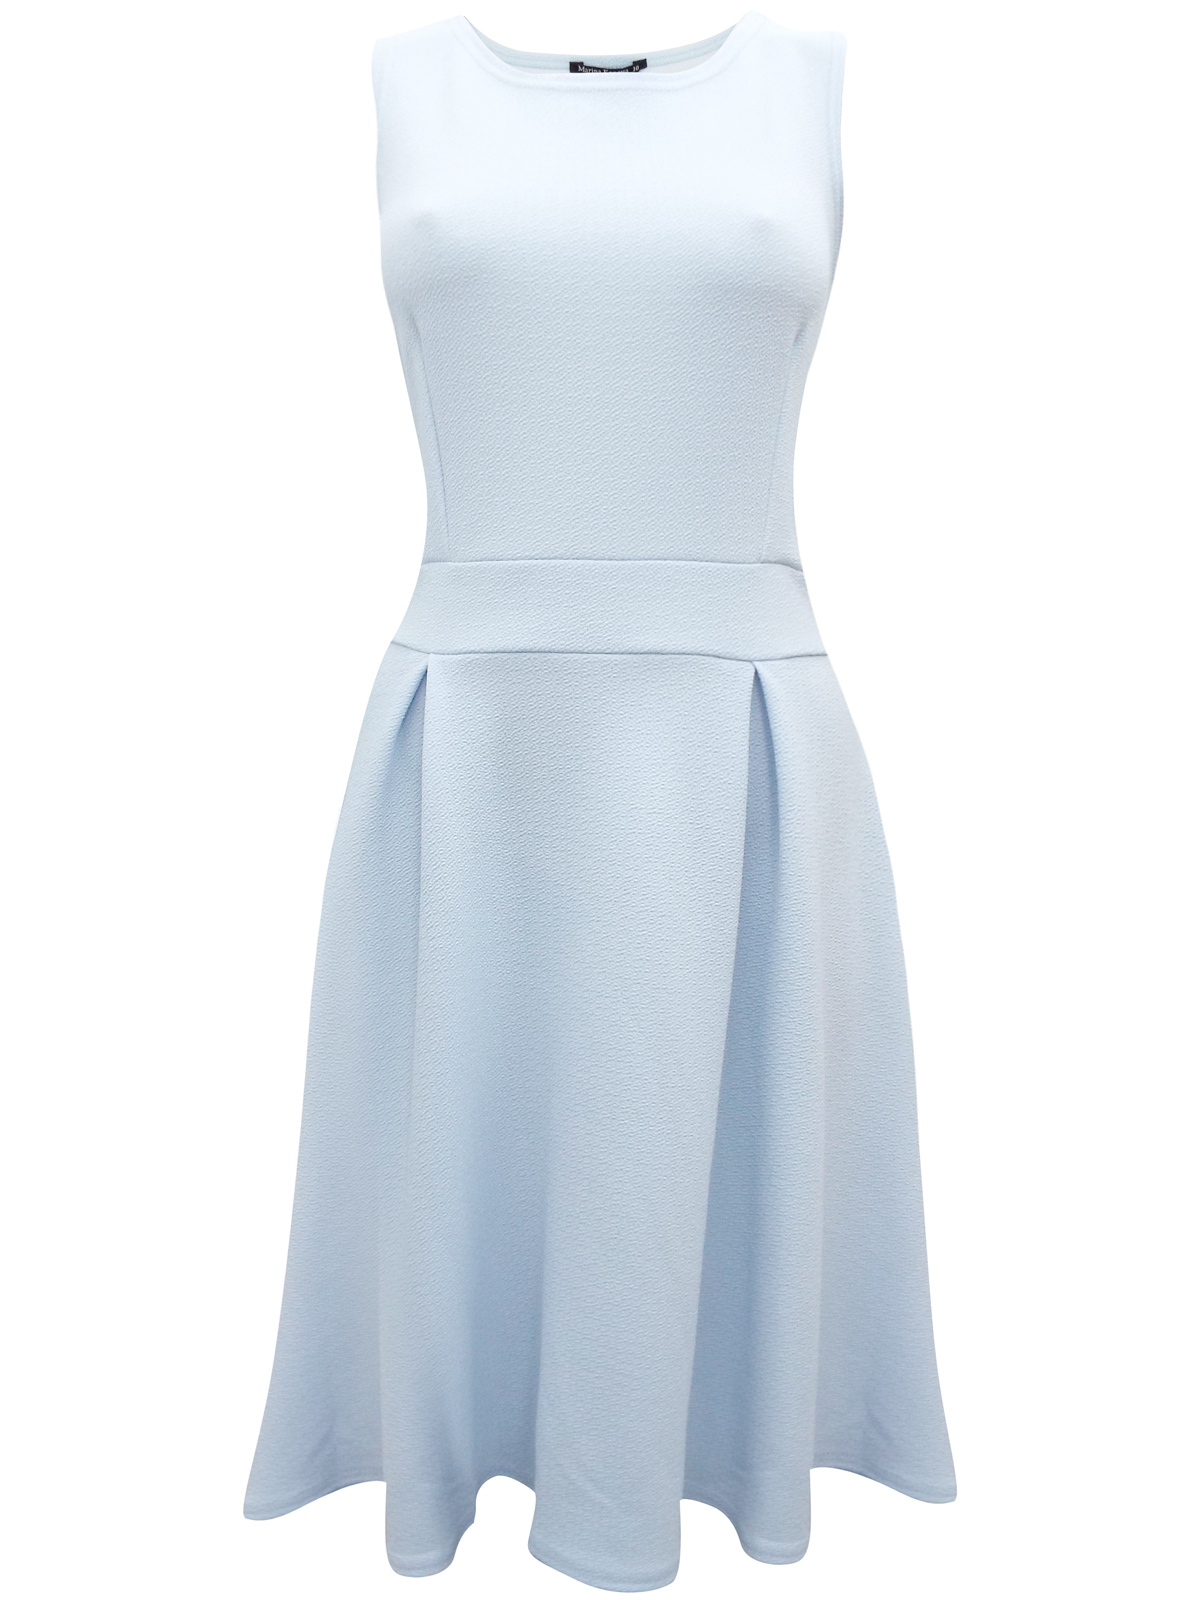 Marina Kaneva BABY-BLUE Sleeveless Fit & Flare Pleated Dress - Size 10 ...